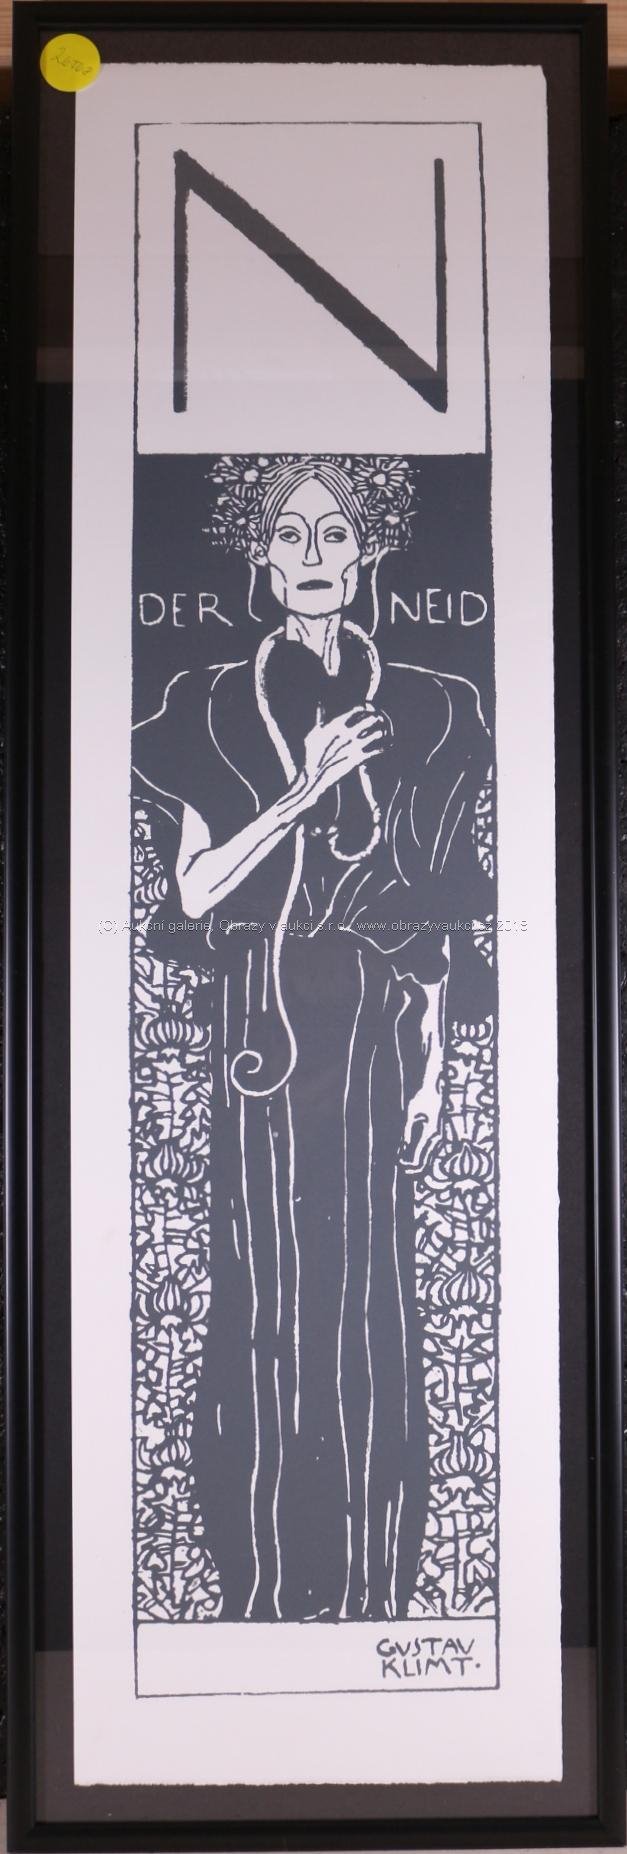 Gustav Klimt - Per Neid